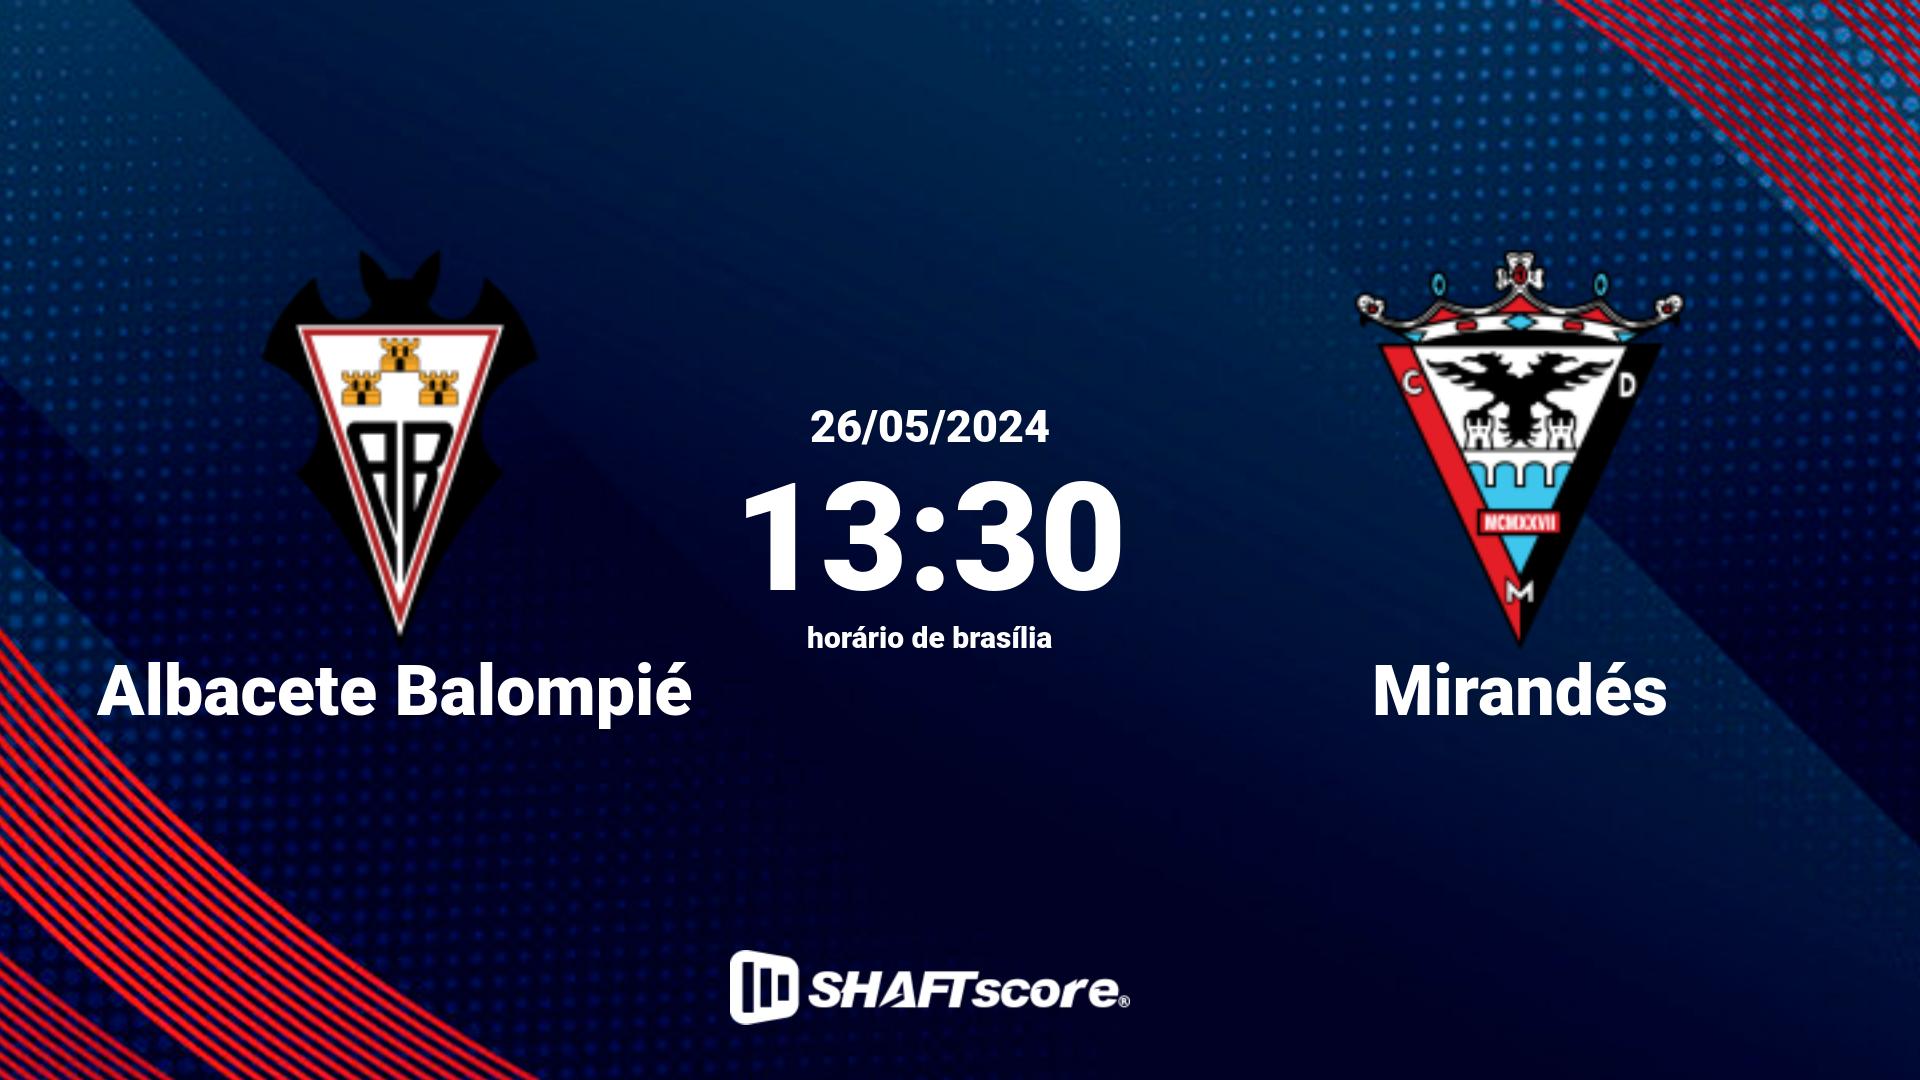 Estatísticas do jogo Albacete Balompié vs Mirandés 26.05 13:30